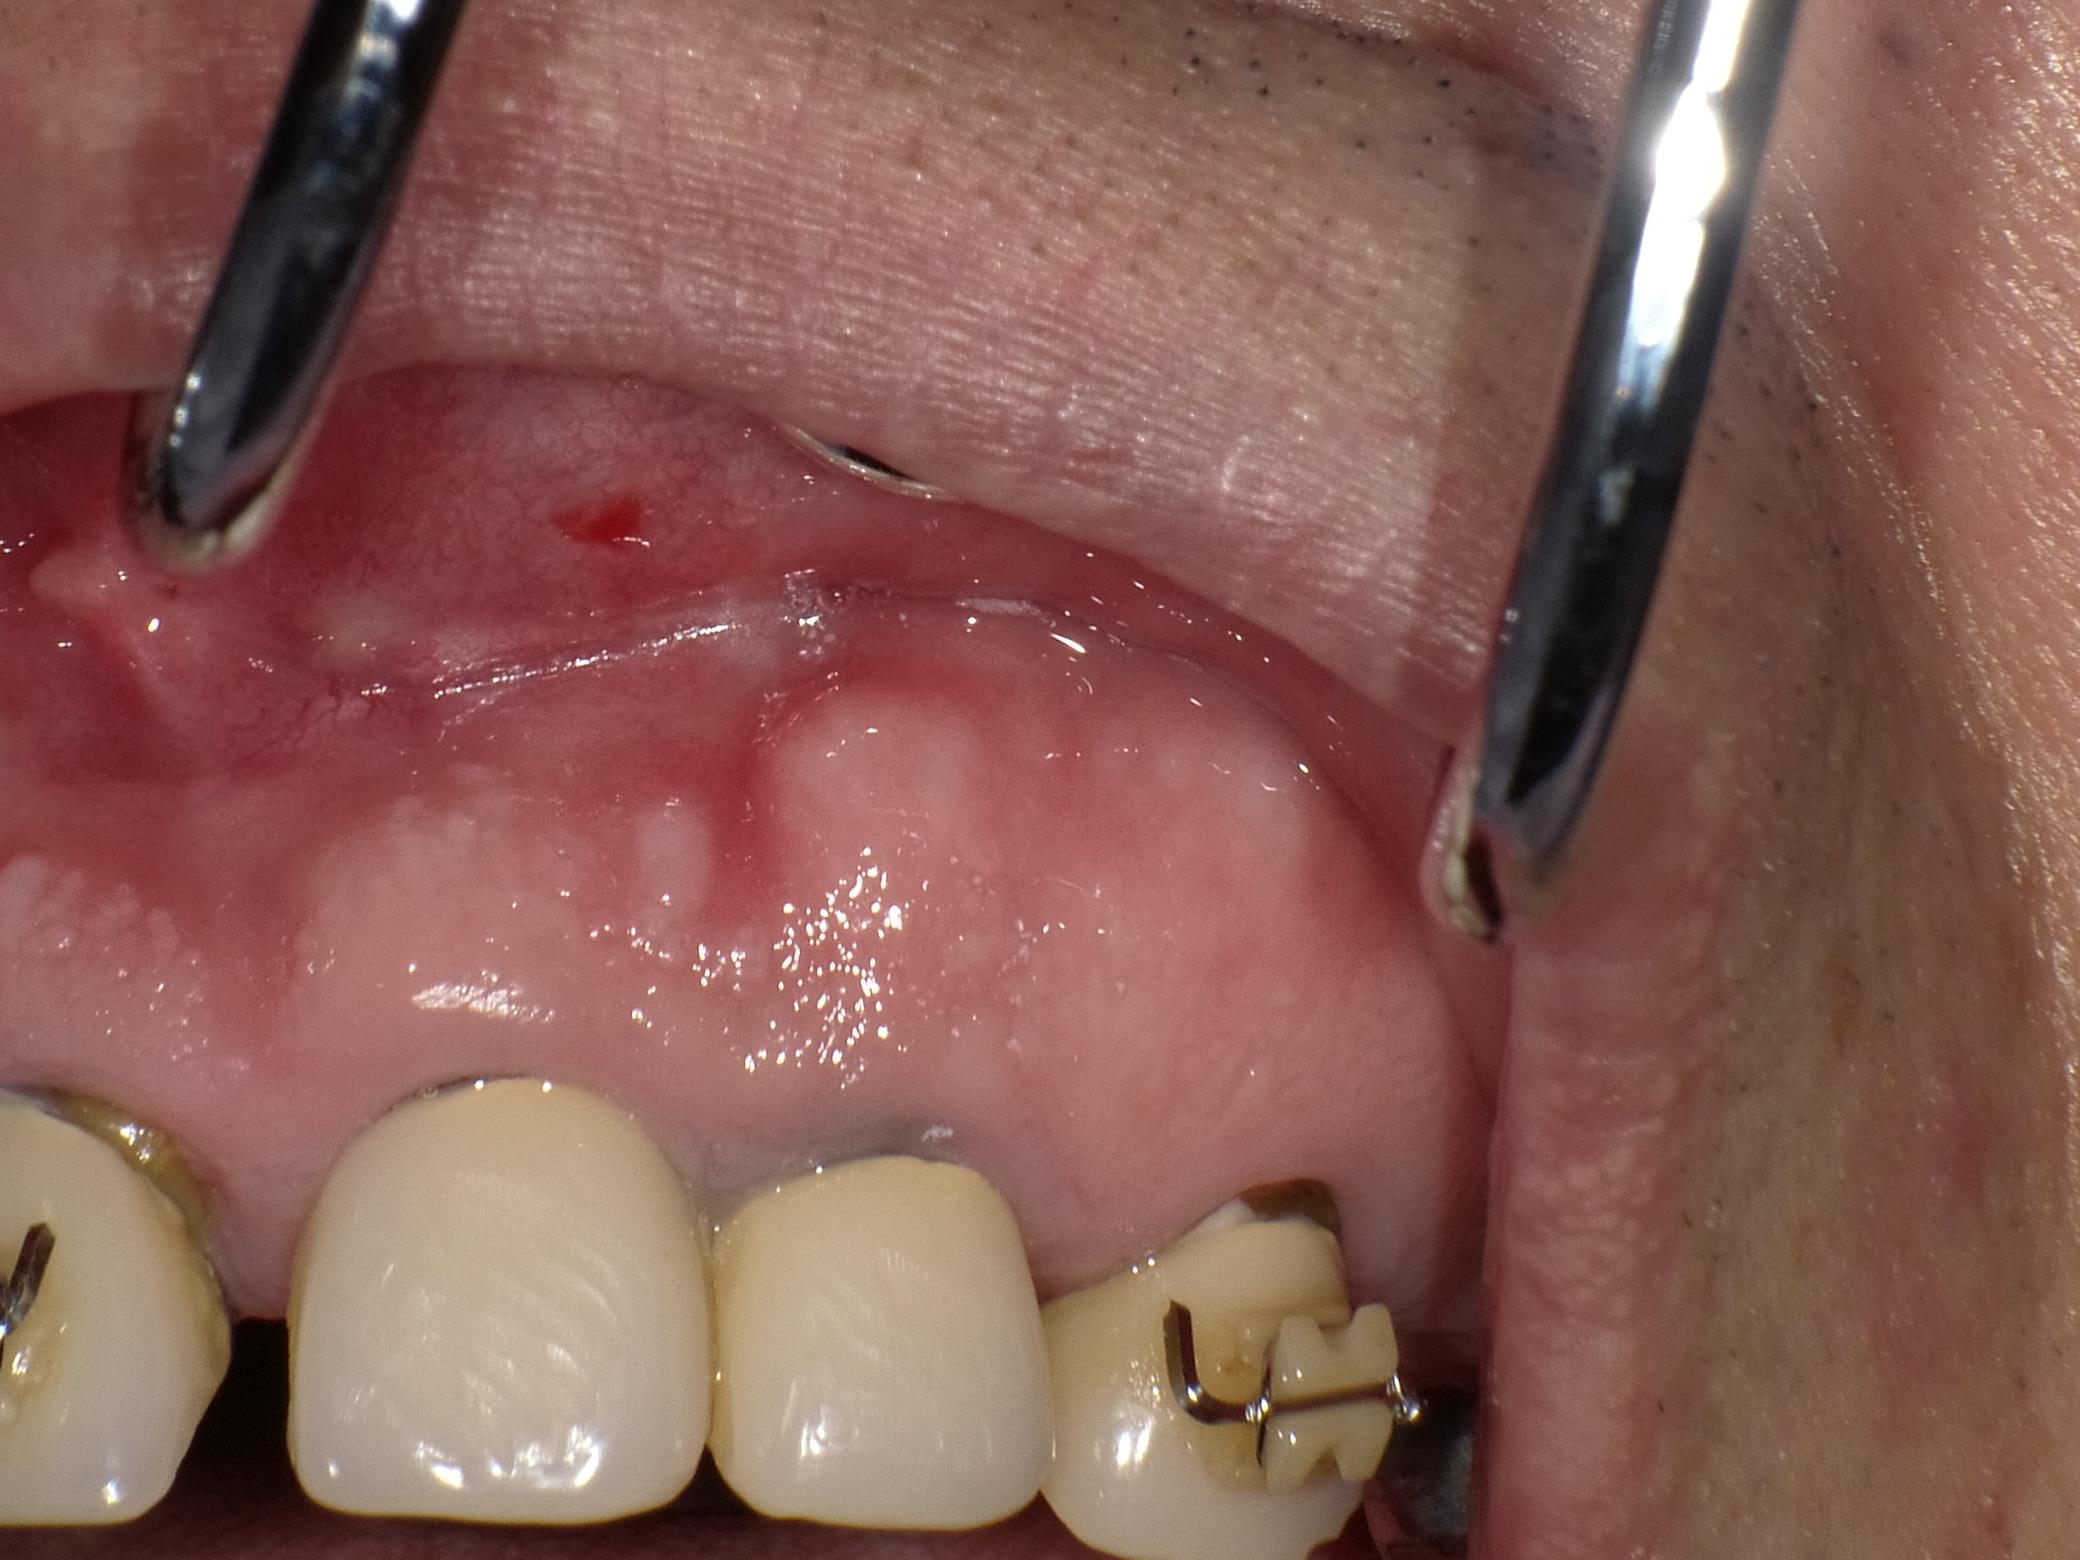 【精密根管治療】歯茎が腫れて膿みが出ている。矯正医からご紹介の患者様。